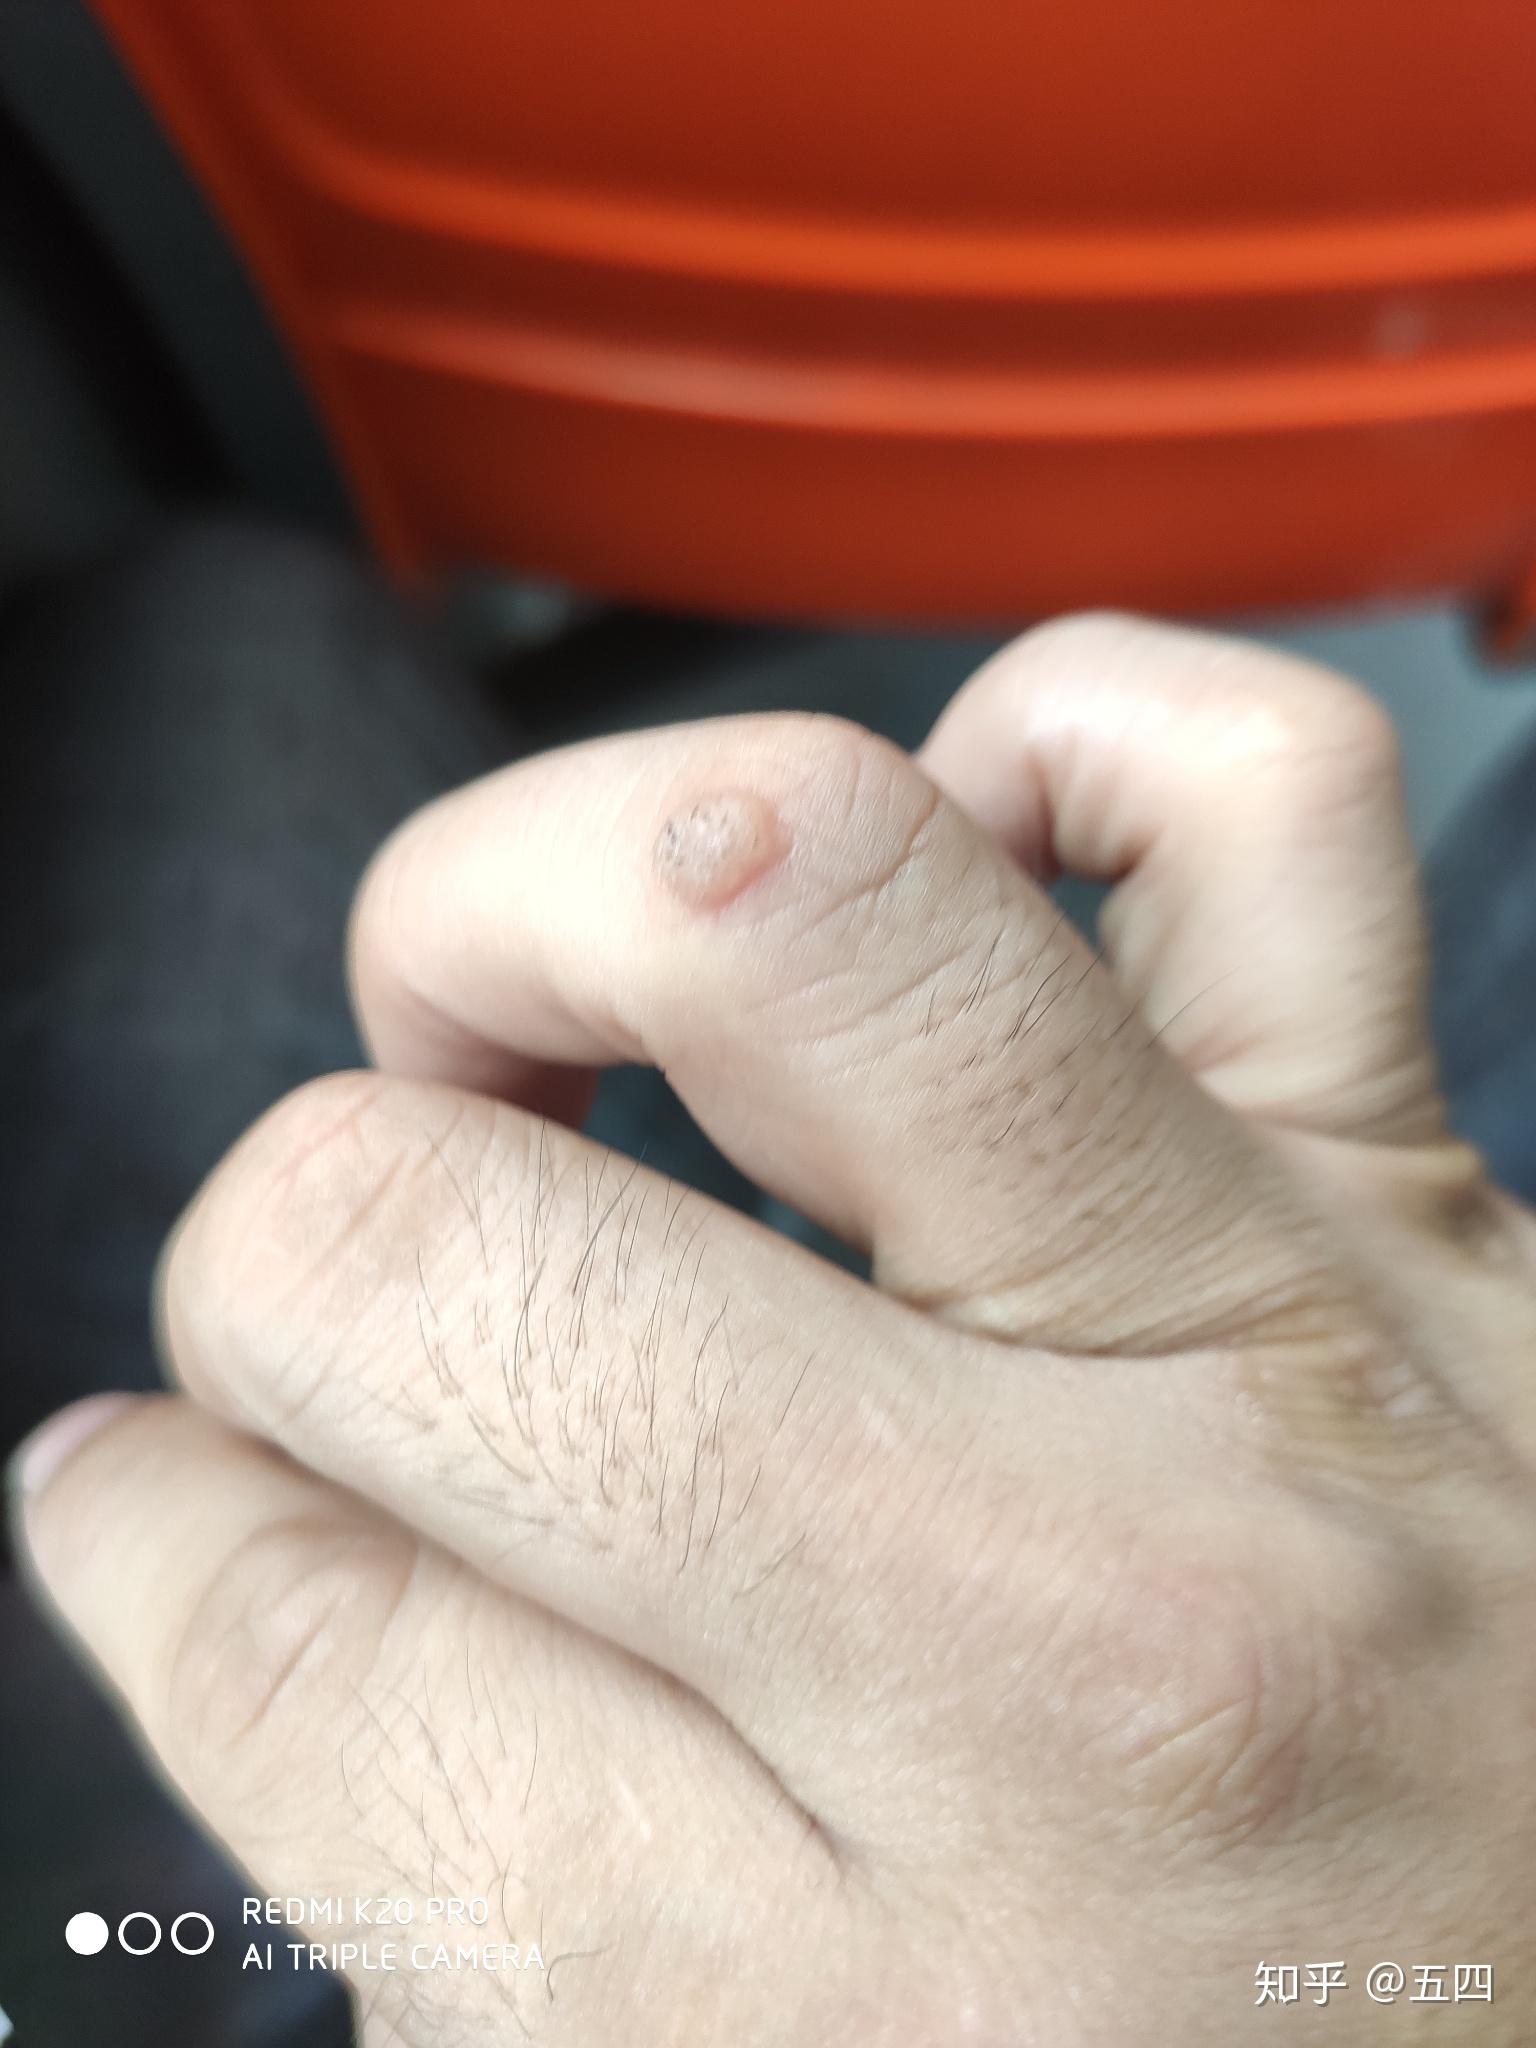 手指上长了个疙瘩表面有点硬,不疼也不痒,请问是什么东西,抠不掉?